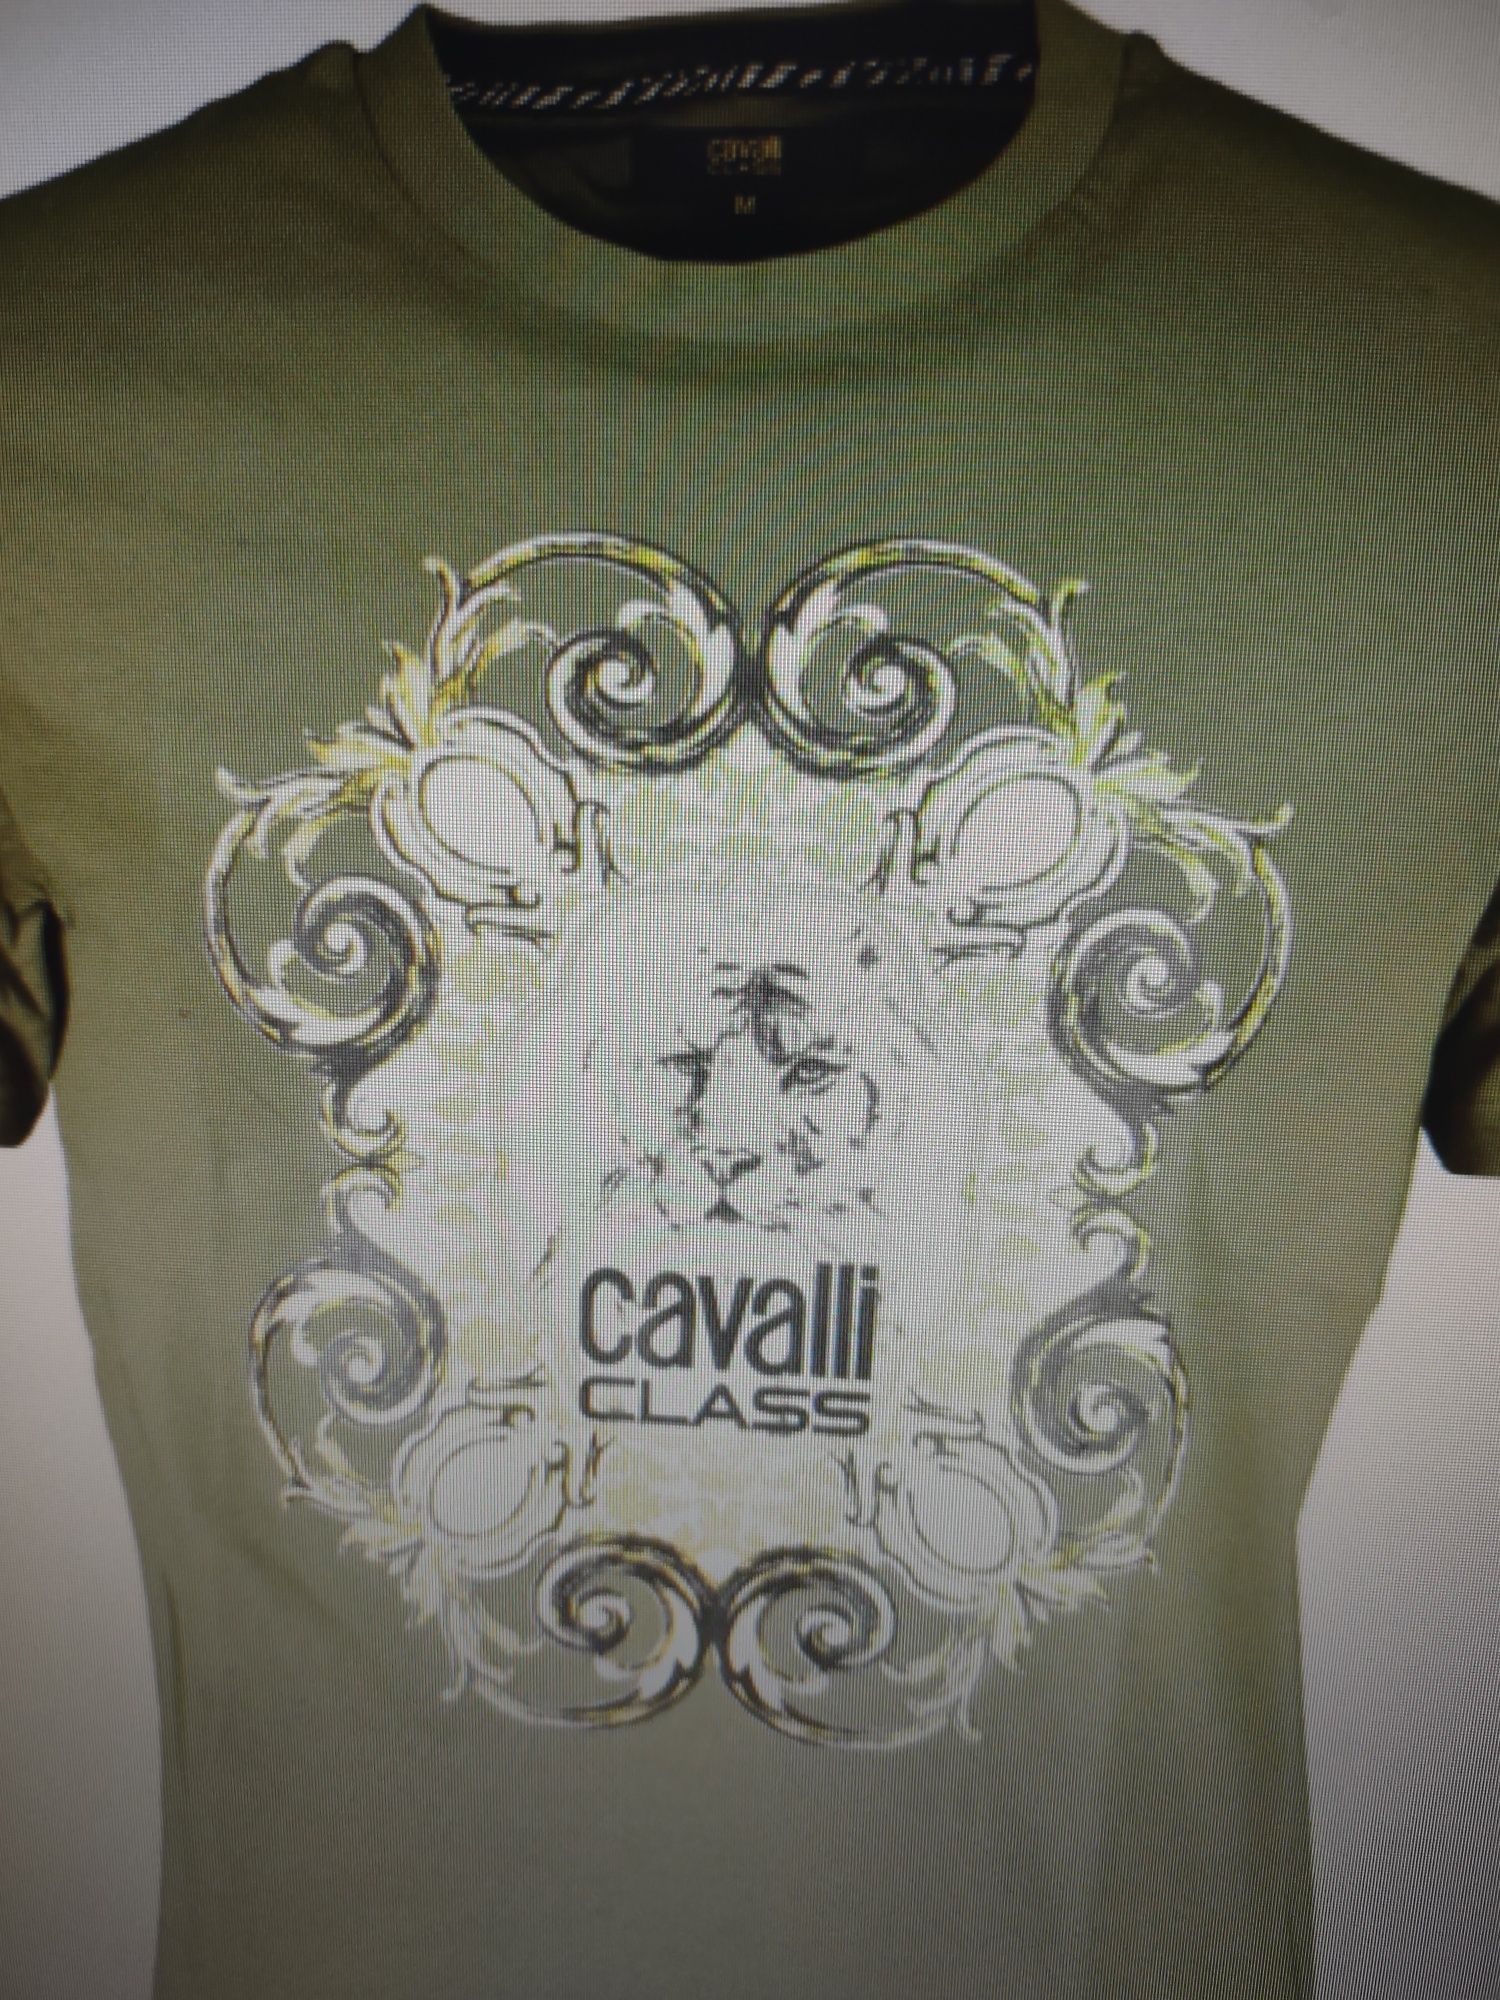 Vând tricouri Cavalli originale. diverse modele
Diferite modele și cul